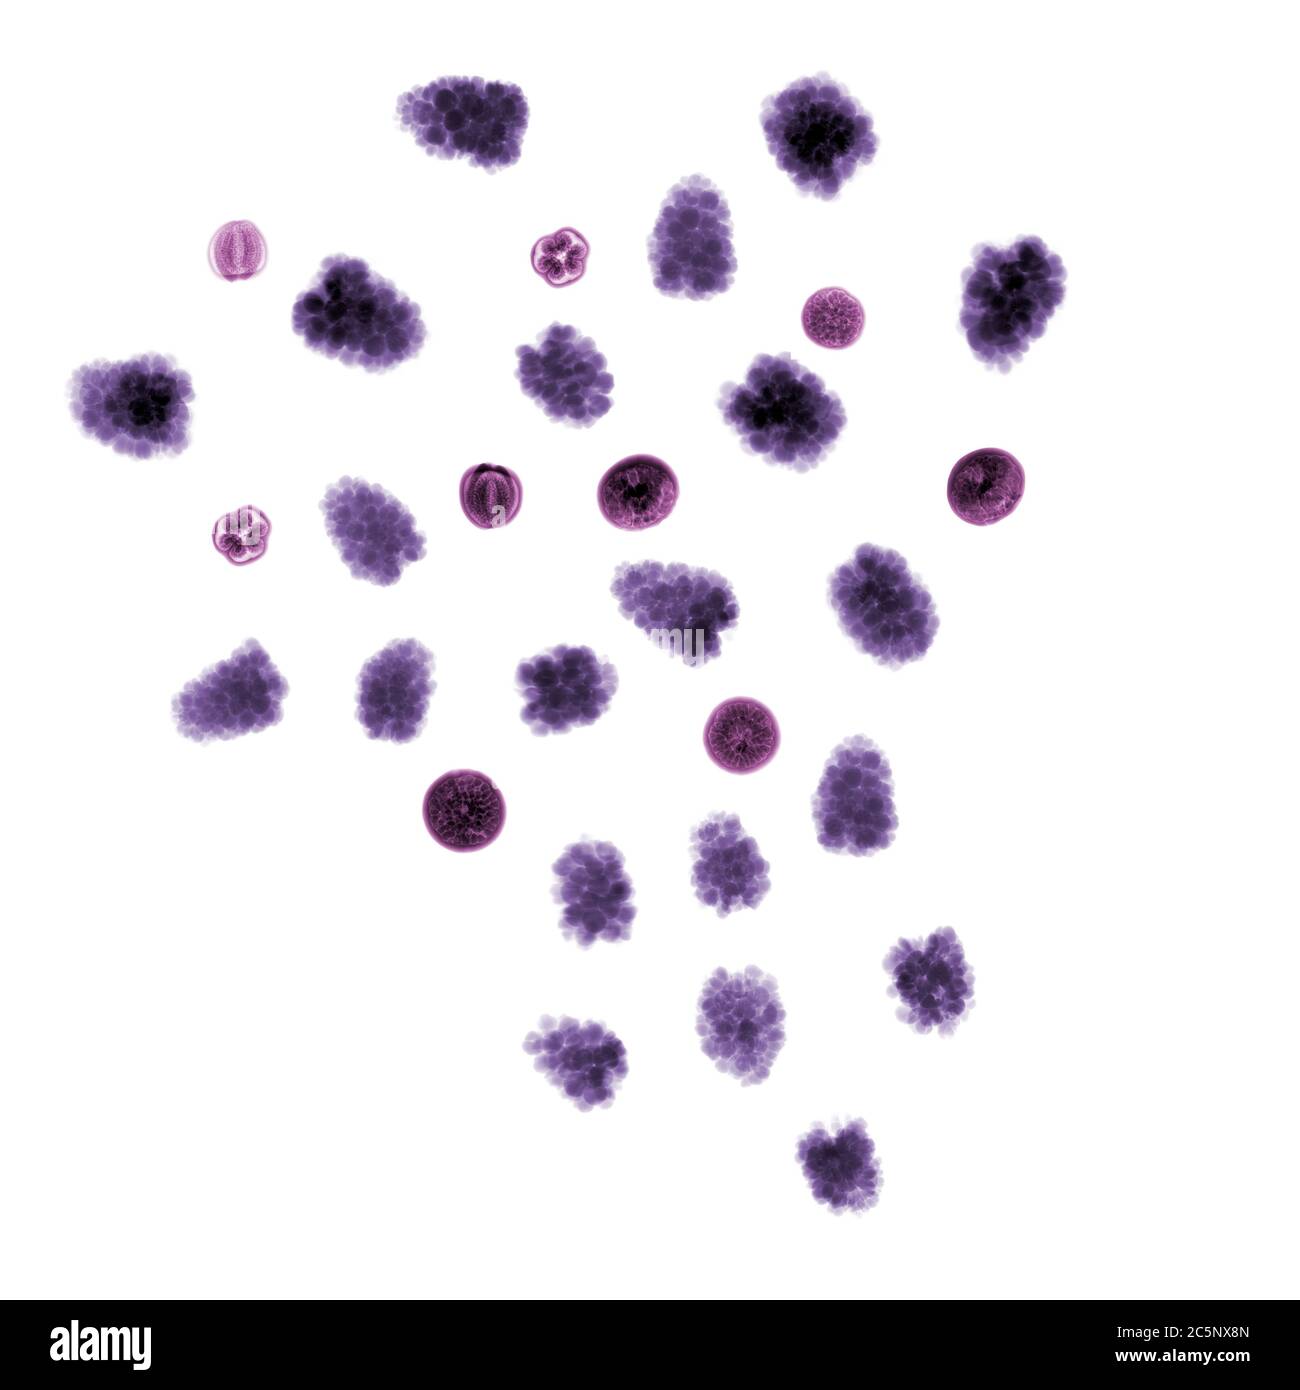 Mûres (Rubus fruticosus) et fruits de palmier acai (Euterpe oleracea), rayons X colorés. Banque D'Images